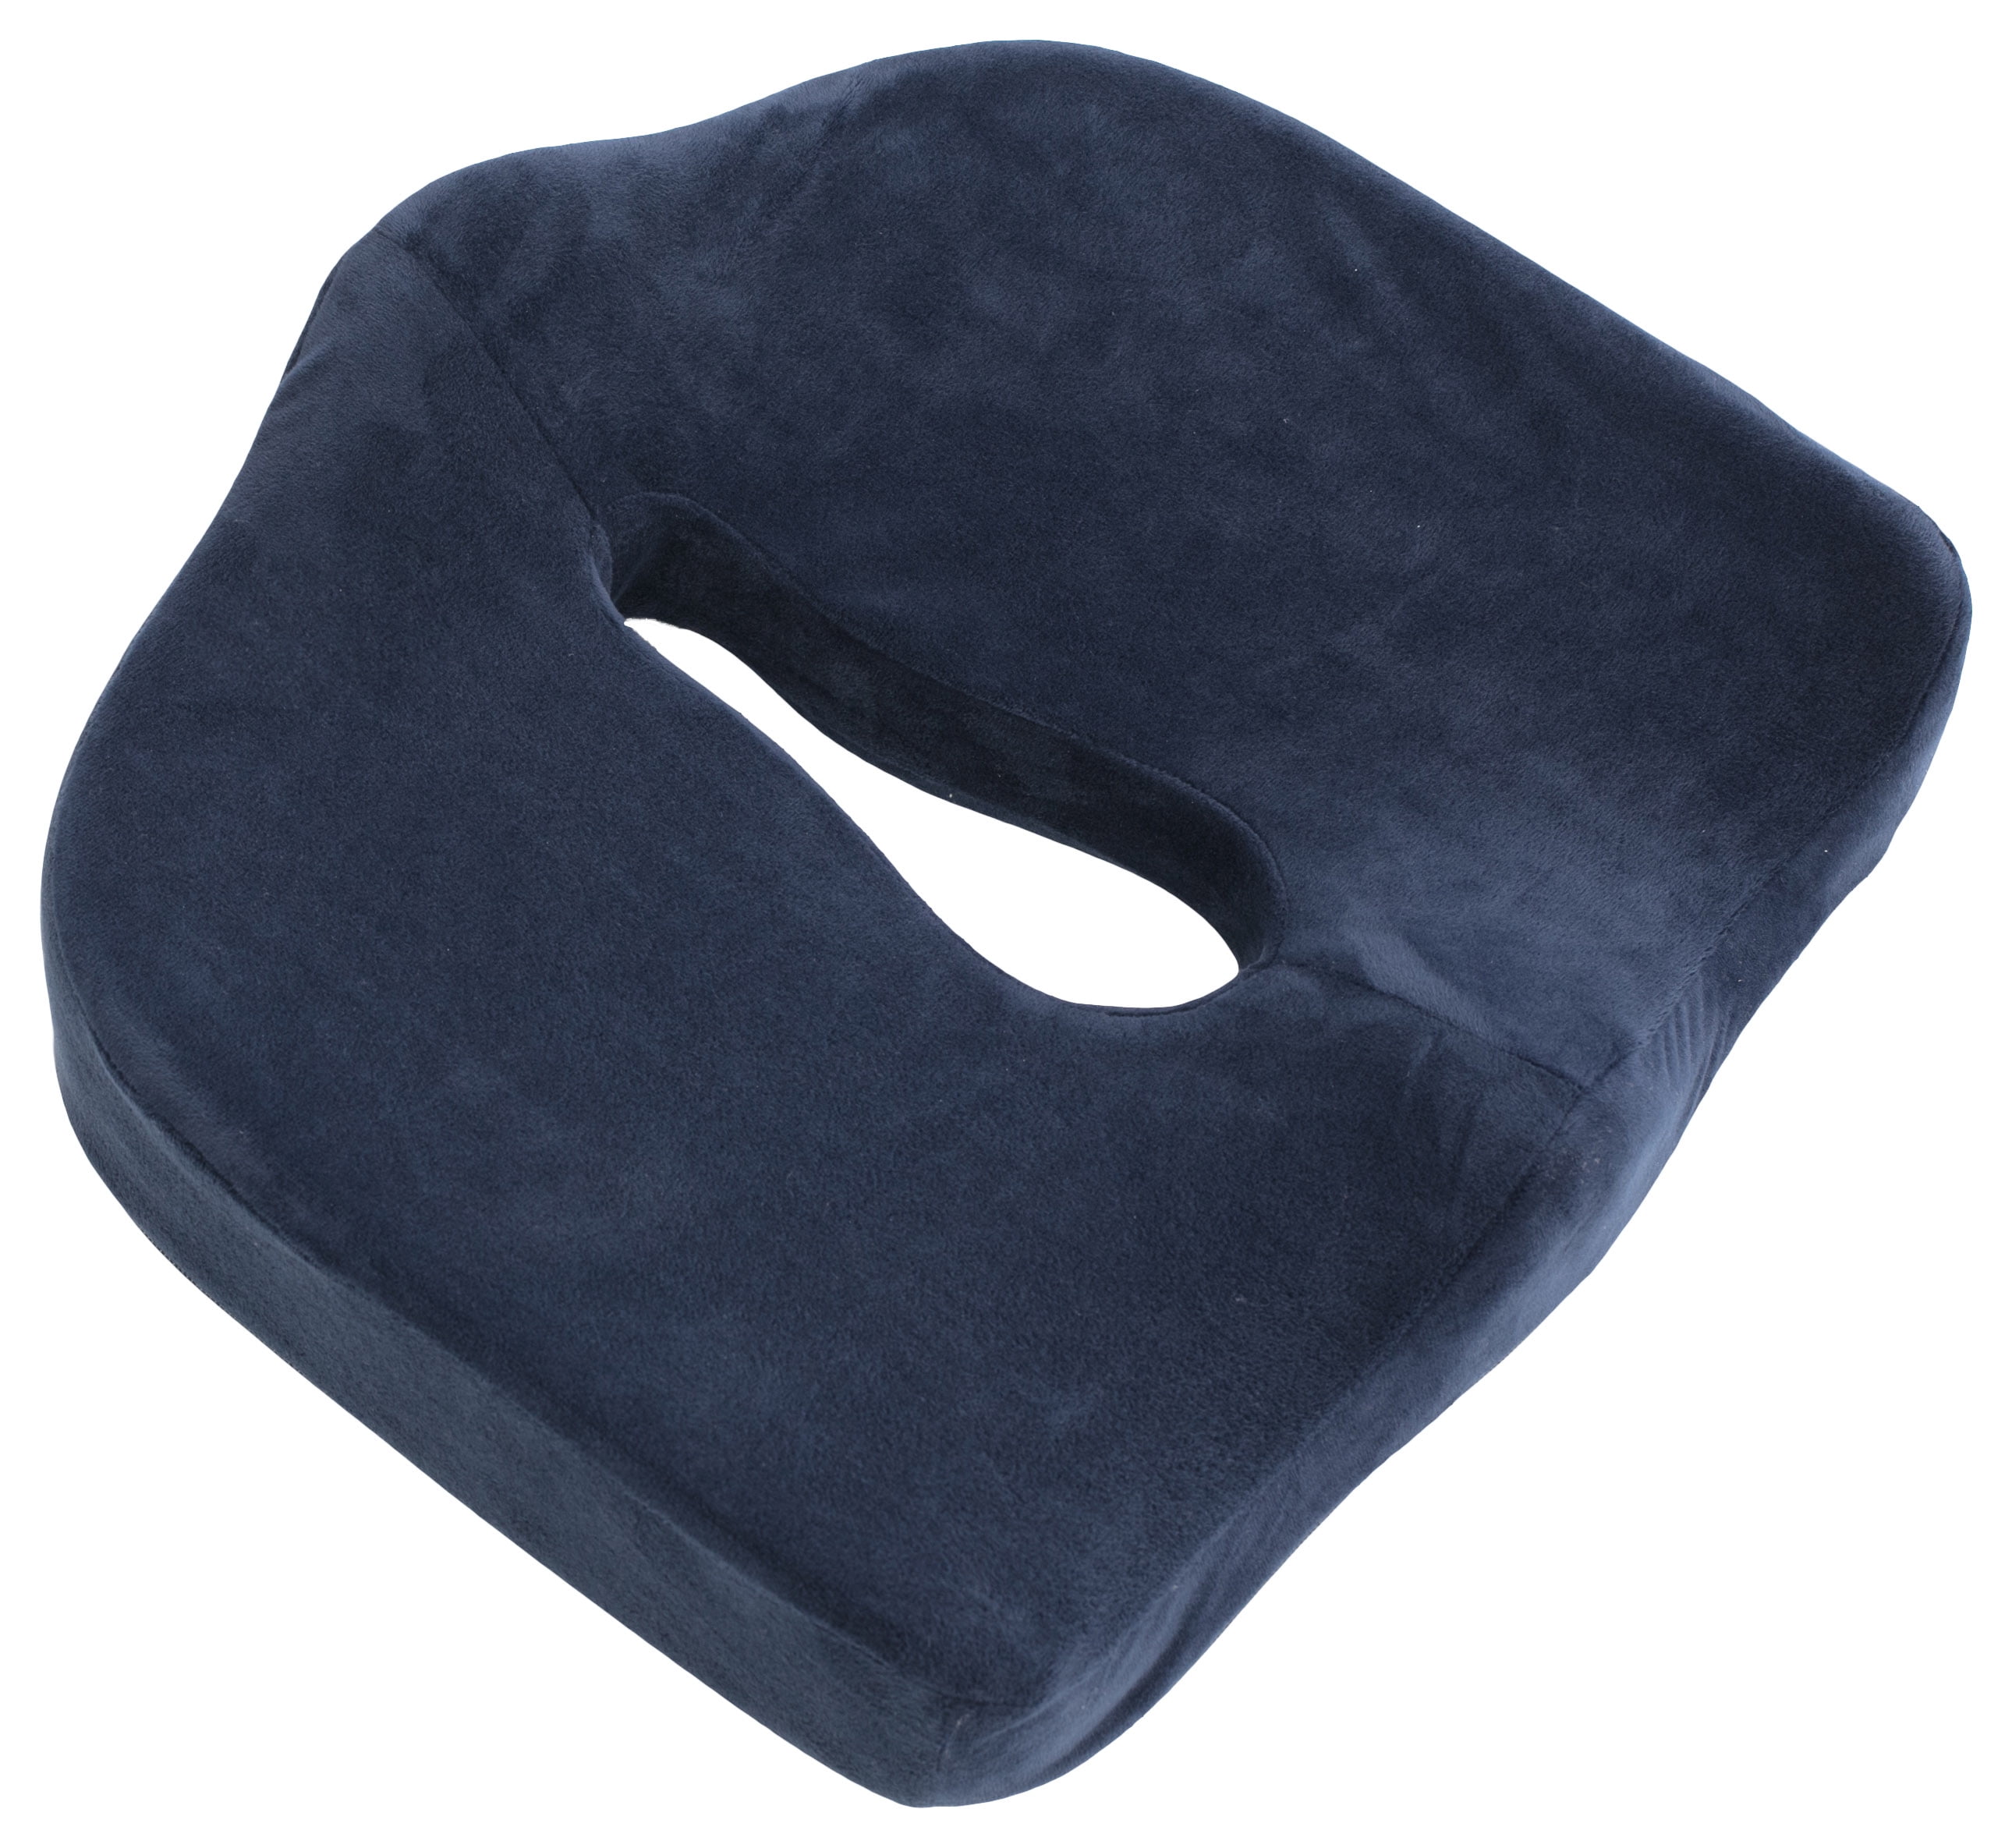 Carex Memory Foam Coccyx Seat Cushion - Tailbone Pain Relief Cushion